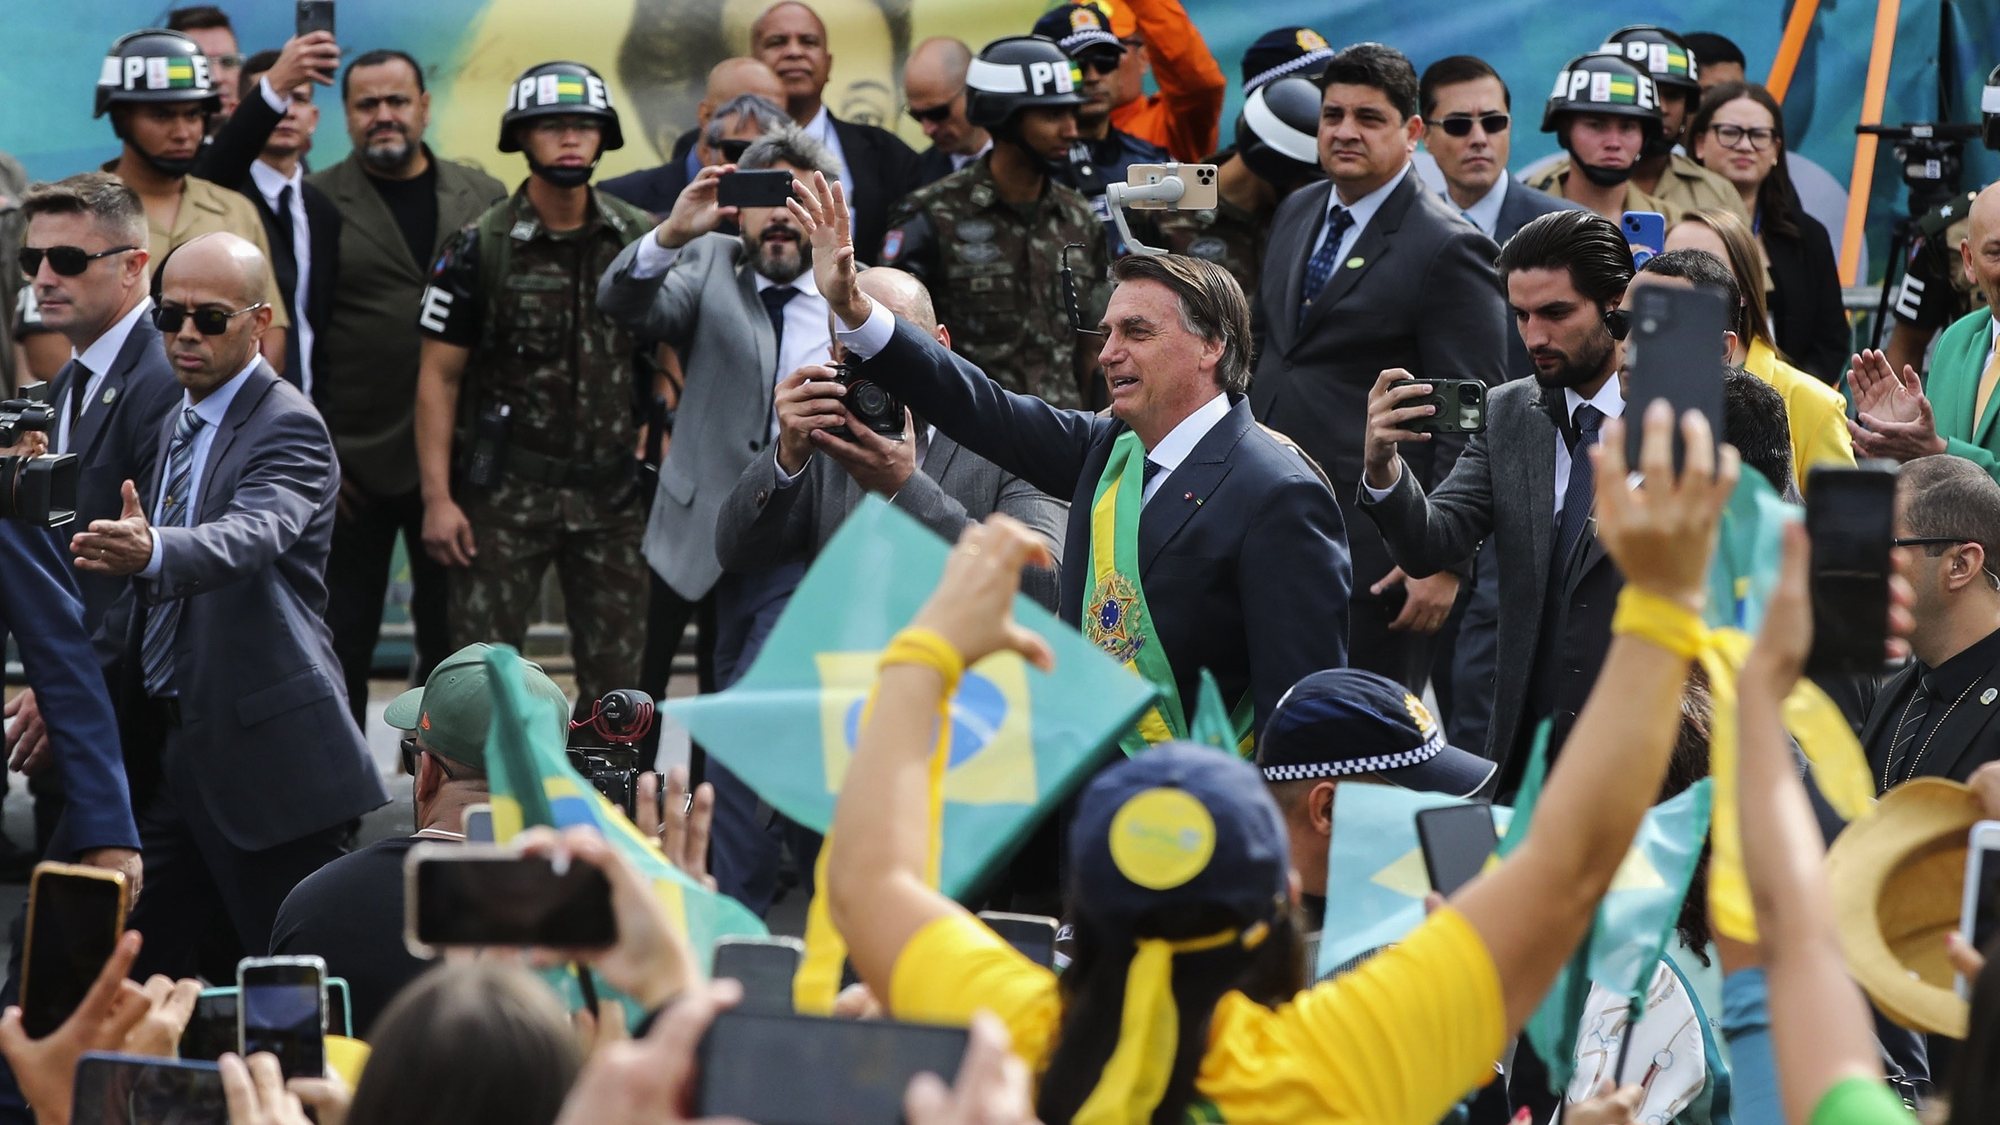 O Presidente da República, Jair Bolsonaro (C), durante o desfile cívico militar do Bicentenário da Independência do Brasil nas ruas de Brasília, Brasil, 7 de setembro de 2022.  MANUEL DE ALMEIDA/LUSA